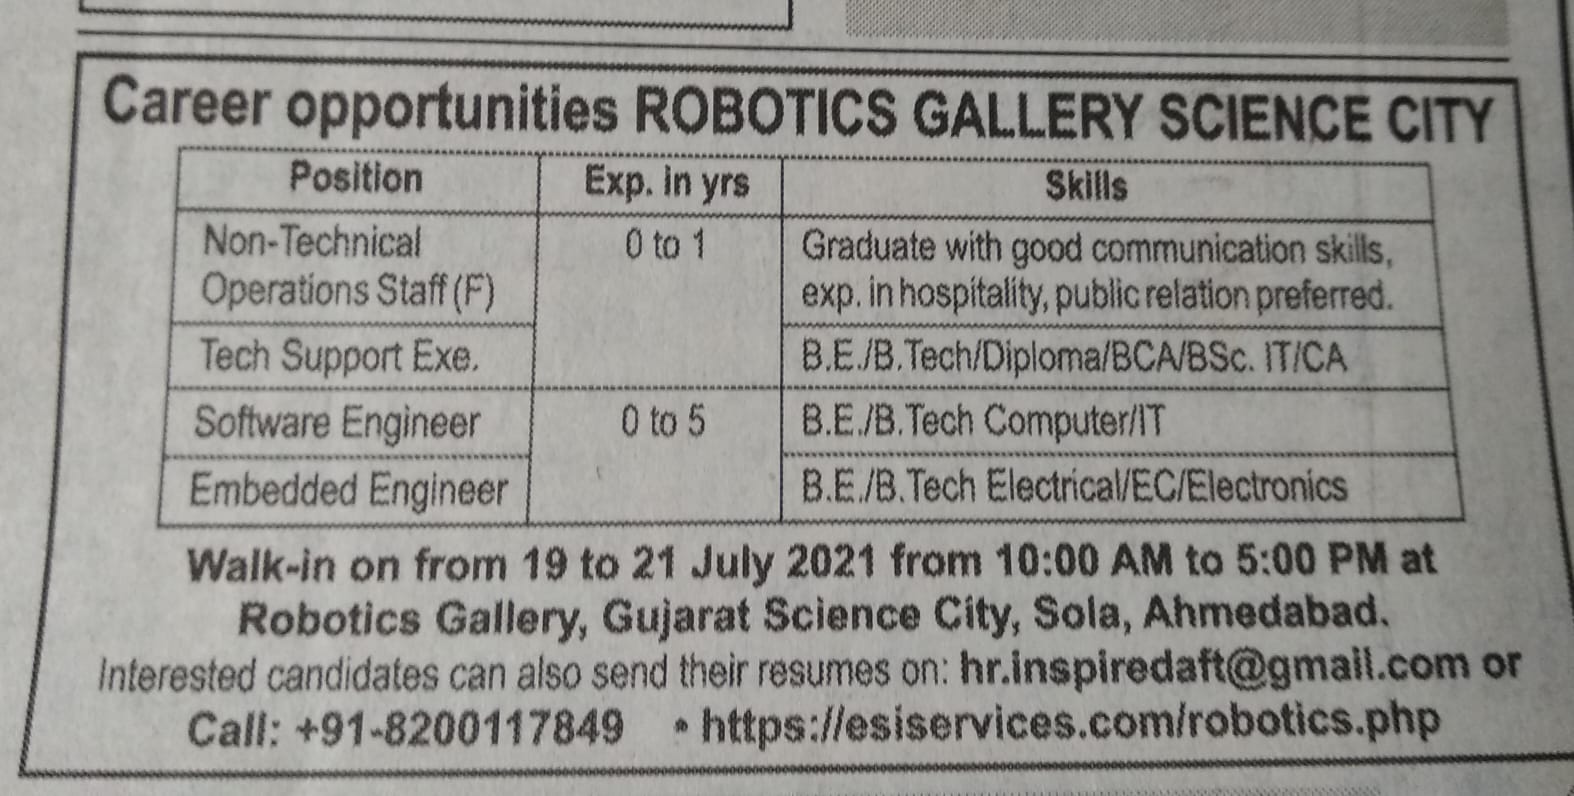 Ahmedabad Robotics Gallery: અમદાવાદઃ સાયન્સ સિટીની રોબોટિક ગેલેરીમાં નોકરીની તક, પીએમ મોદીએ ગઈકાલે કર્યુ હતું ઉદ્ઘાટન